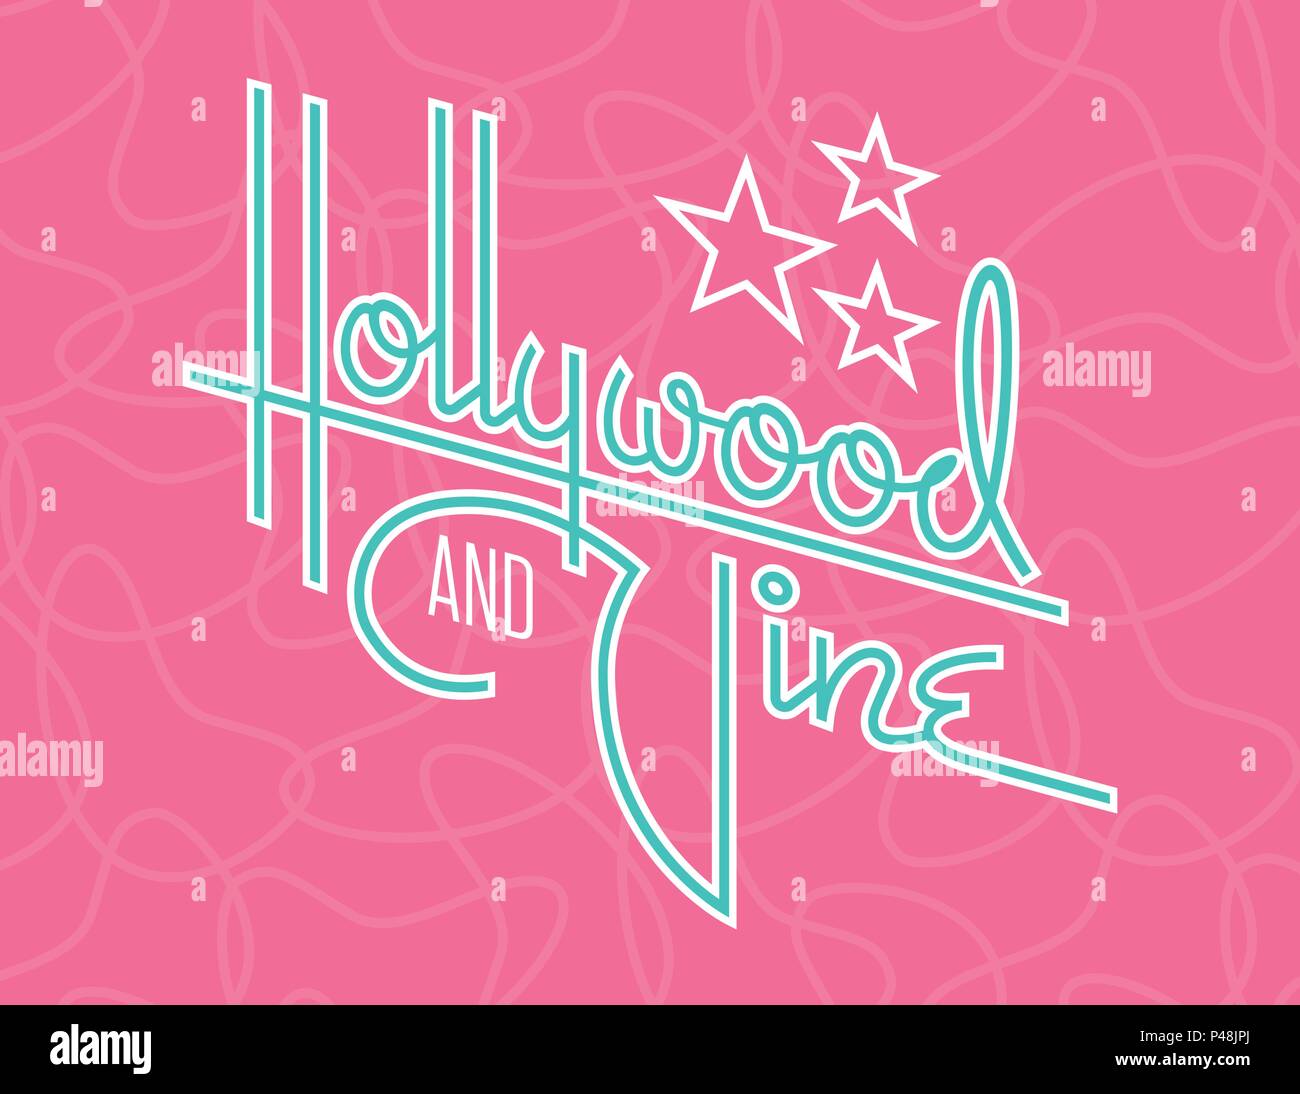 Hollywood Retro Vektor Design mit Sternen. Benutzerdefinierte Hand gezeichnet script Design des Wortes Hollywood mit Retro Stil der 1950er Jahre vibe. Stock Vektor